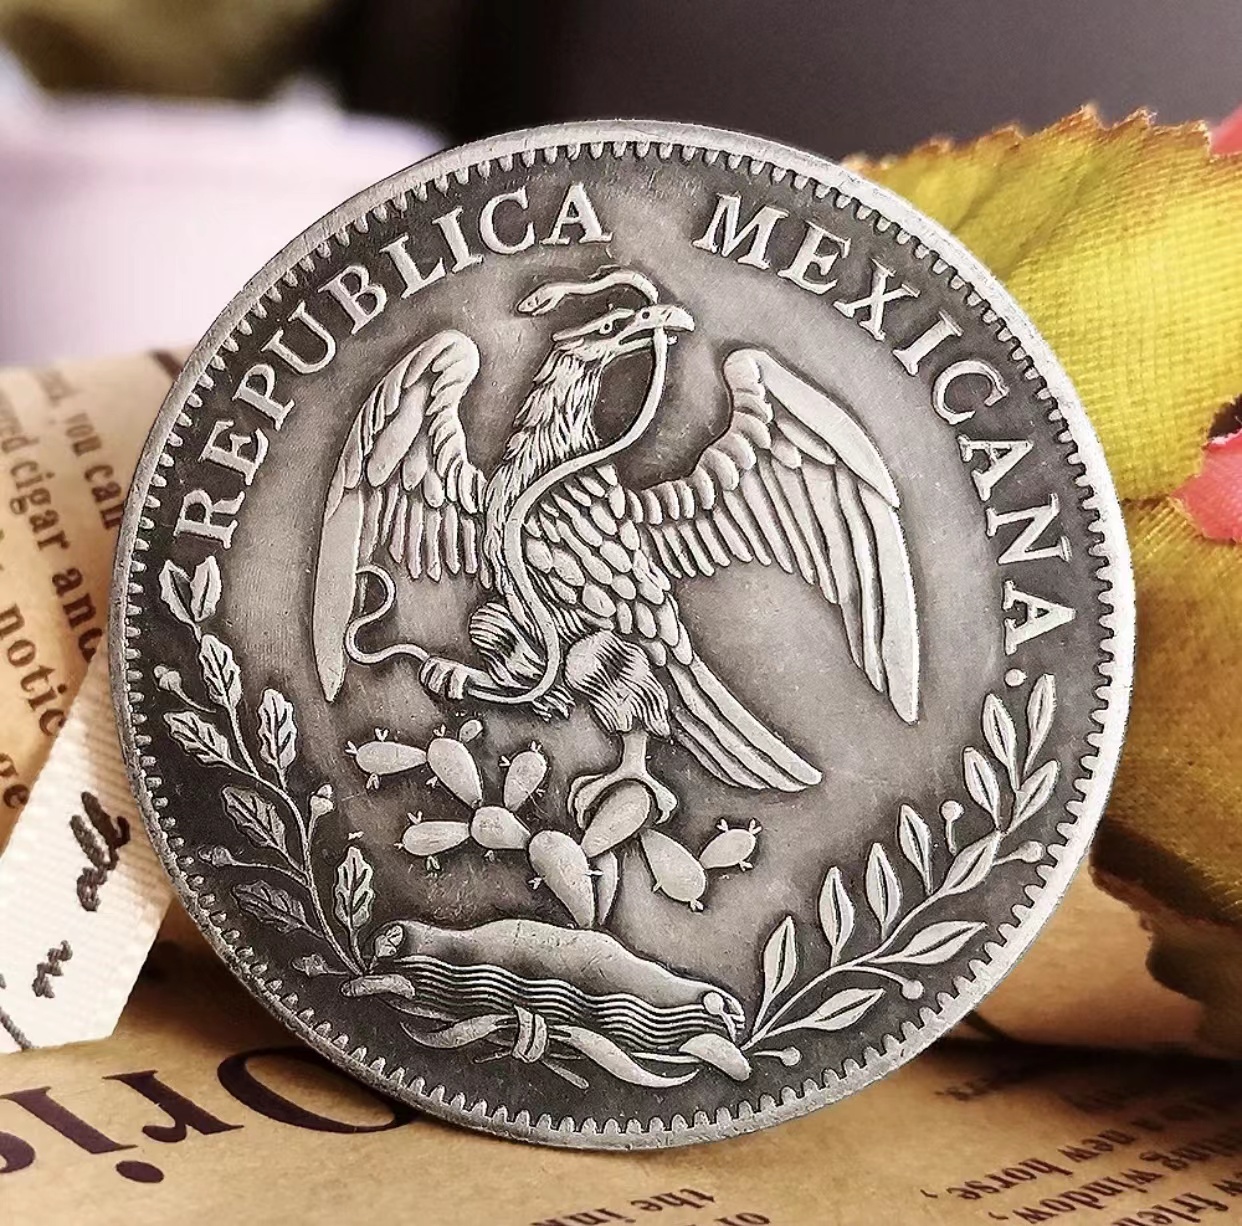 【多彩墨西哥】那些年在中国的墨西哥银元